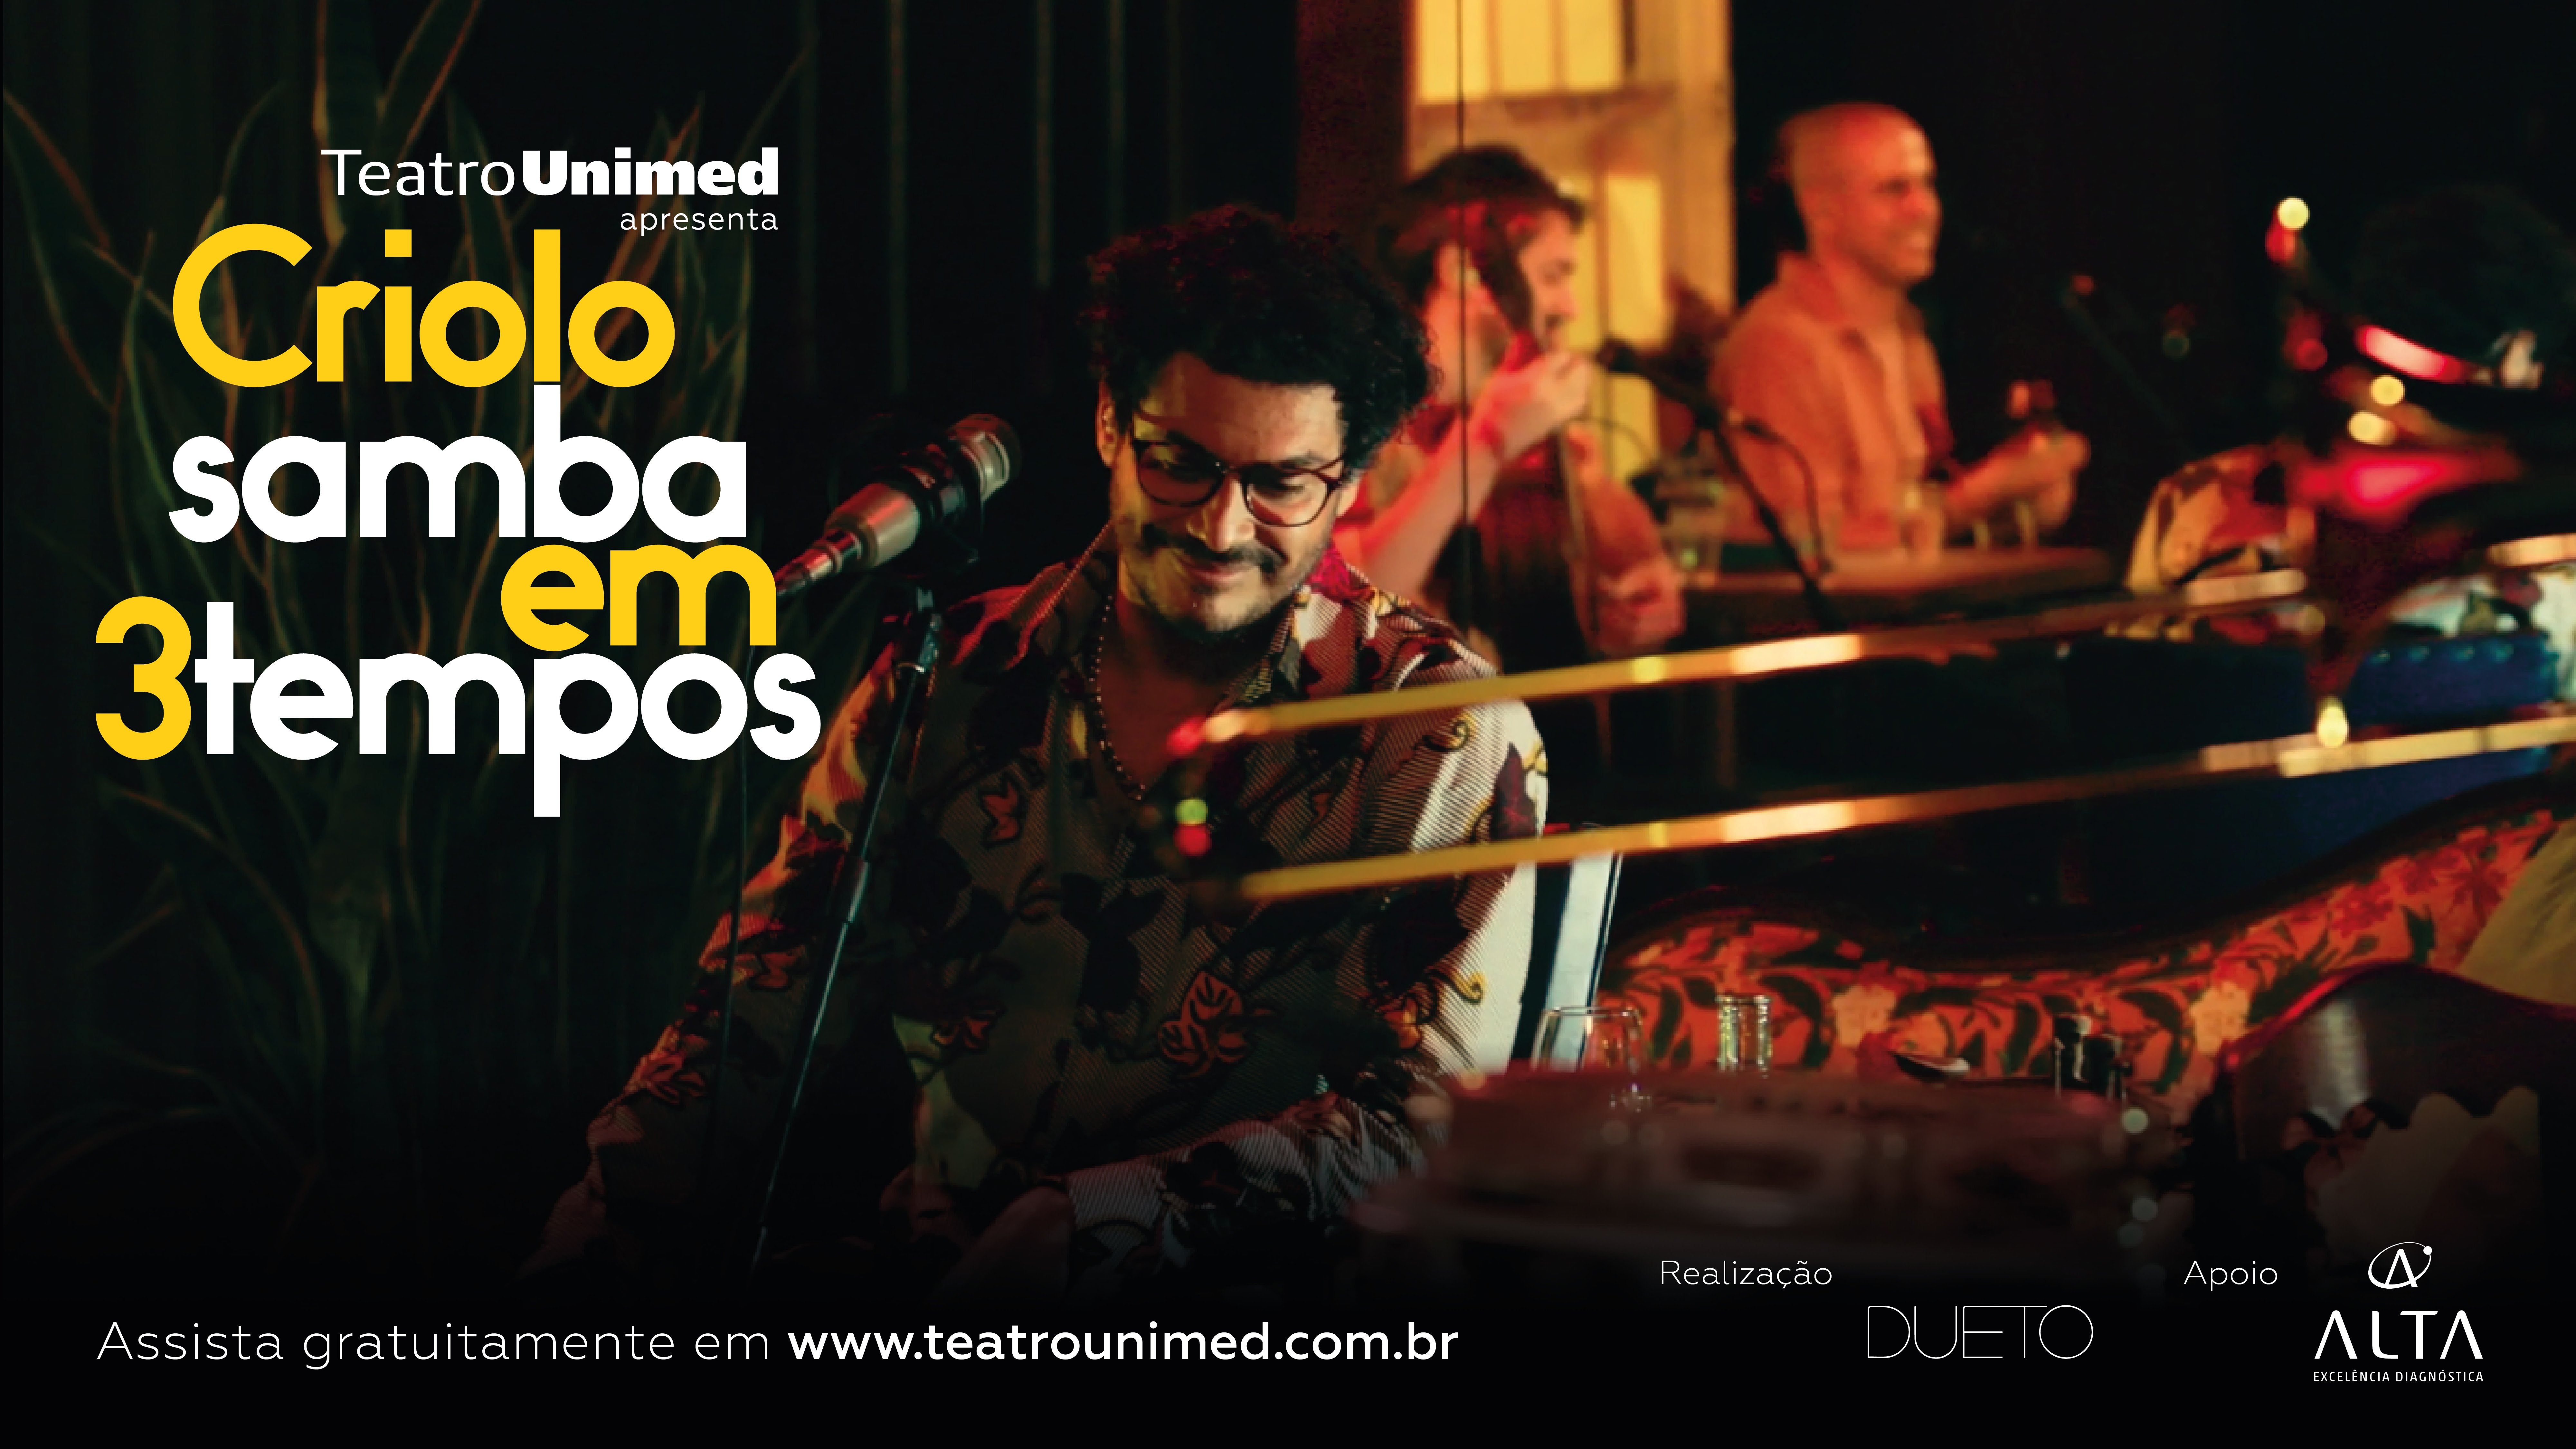 Filme-concerto Criolo Samba em 3 Tempos pode ser visto gratuitamente no site do Teatro Unimed